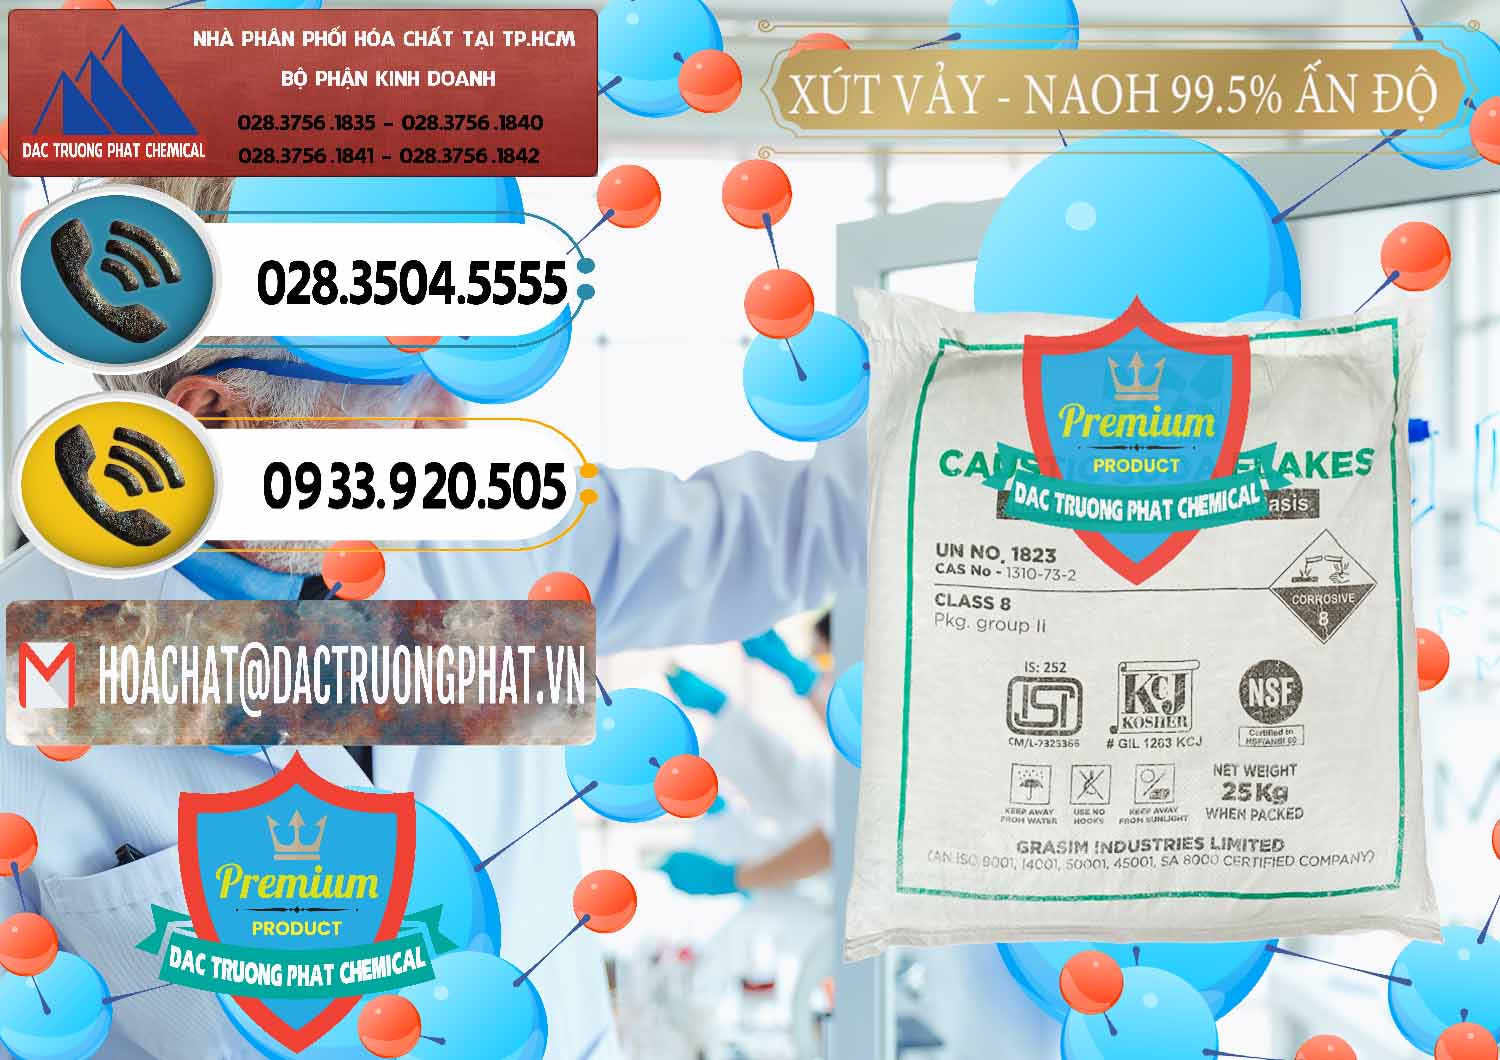 Đơn vị bán & phân phối Xút Vảy - NaOH Vảy 99.5% Aditya Birla Grasim Ấn Độ India - 0170 - Cty bán & phân phối hóa chất tại TP.HCM - hoachatdetnhuom.vn